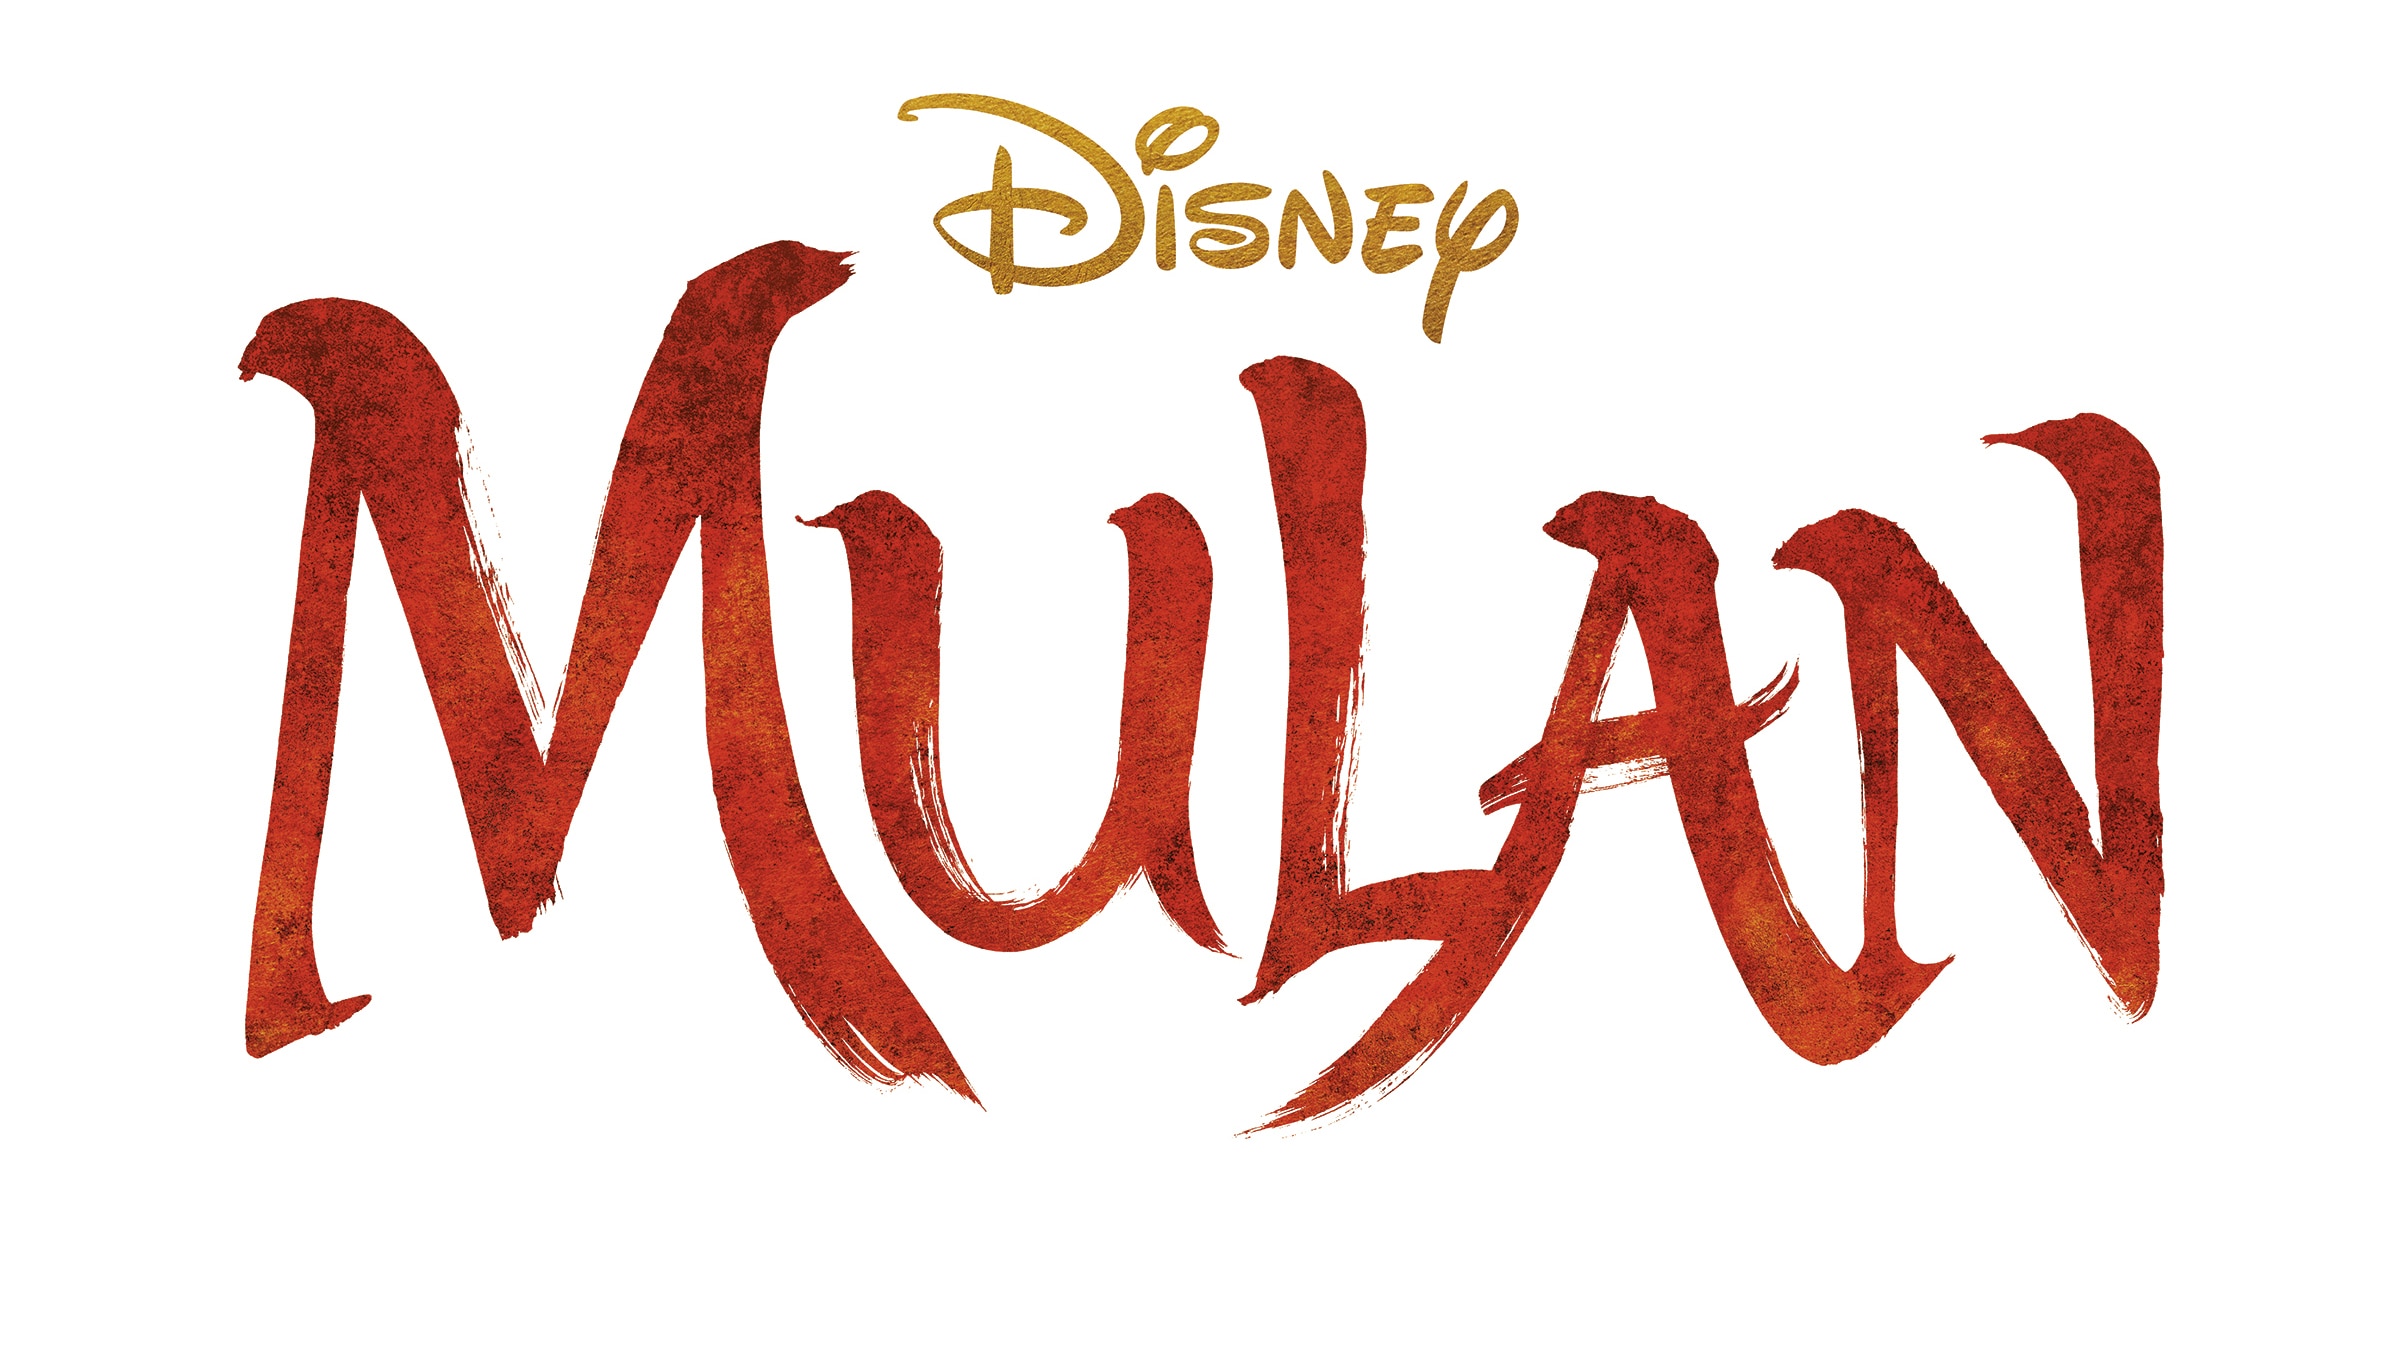 Disney Mulan 2 logo